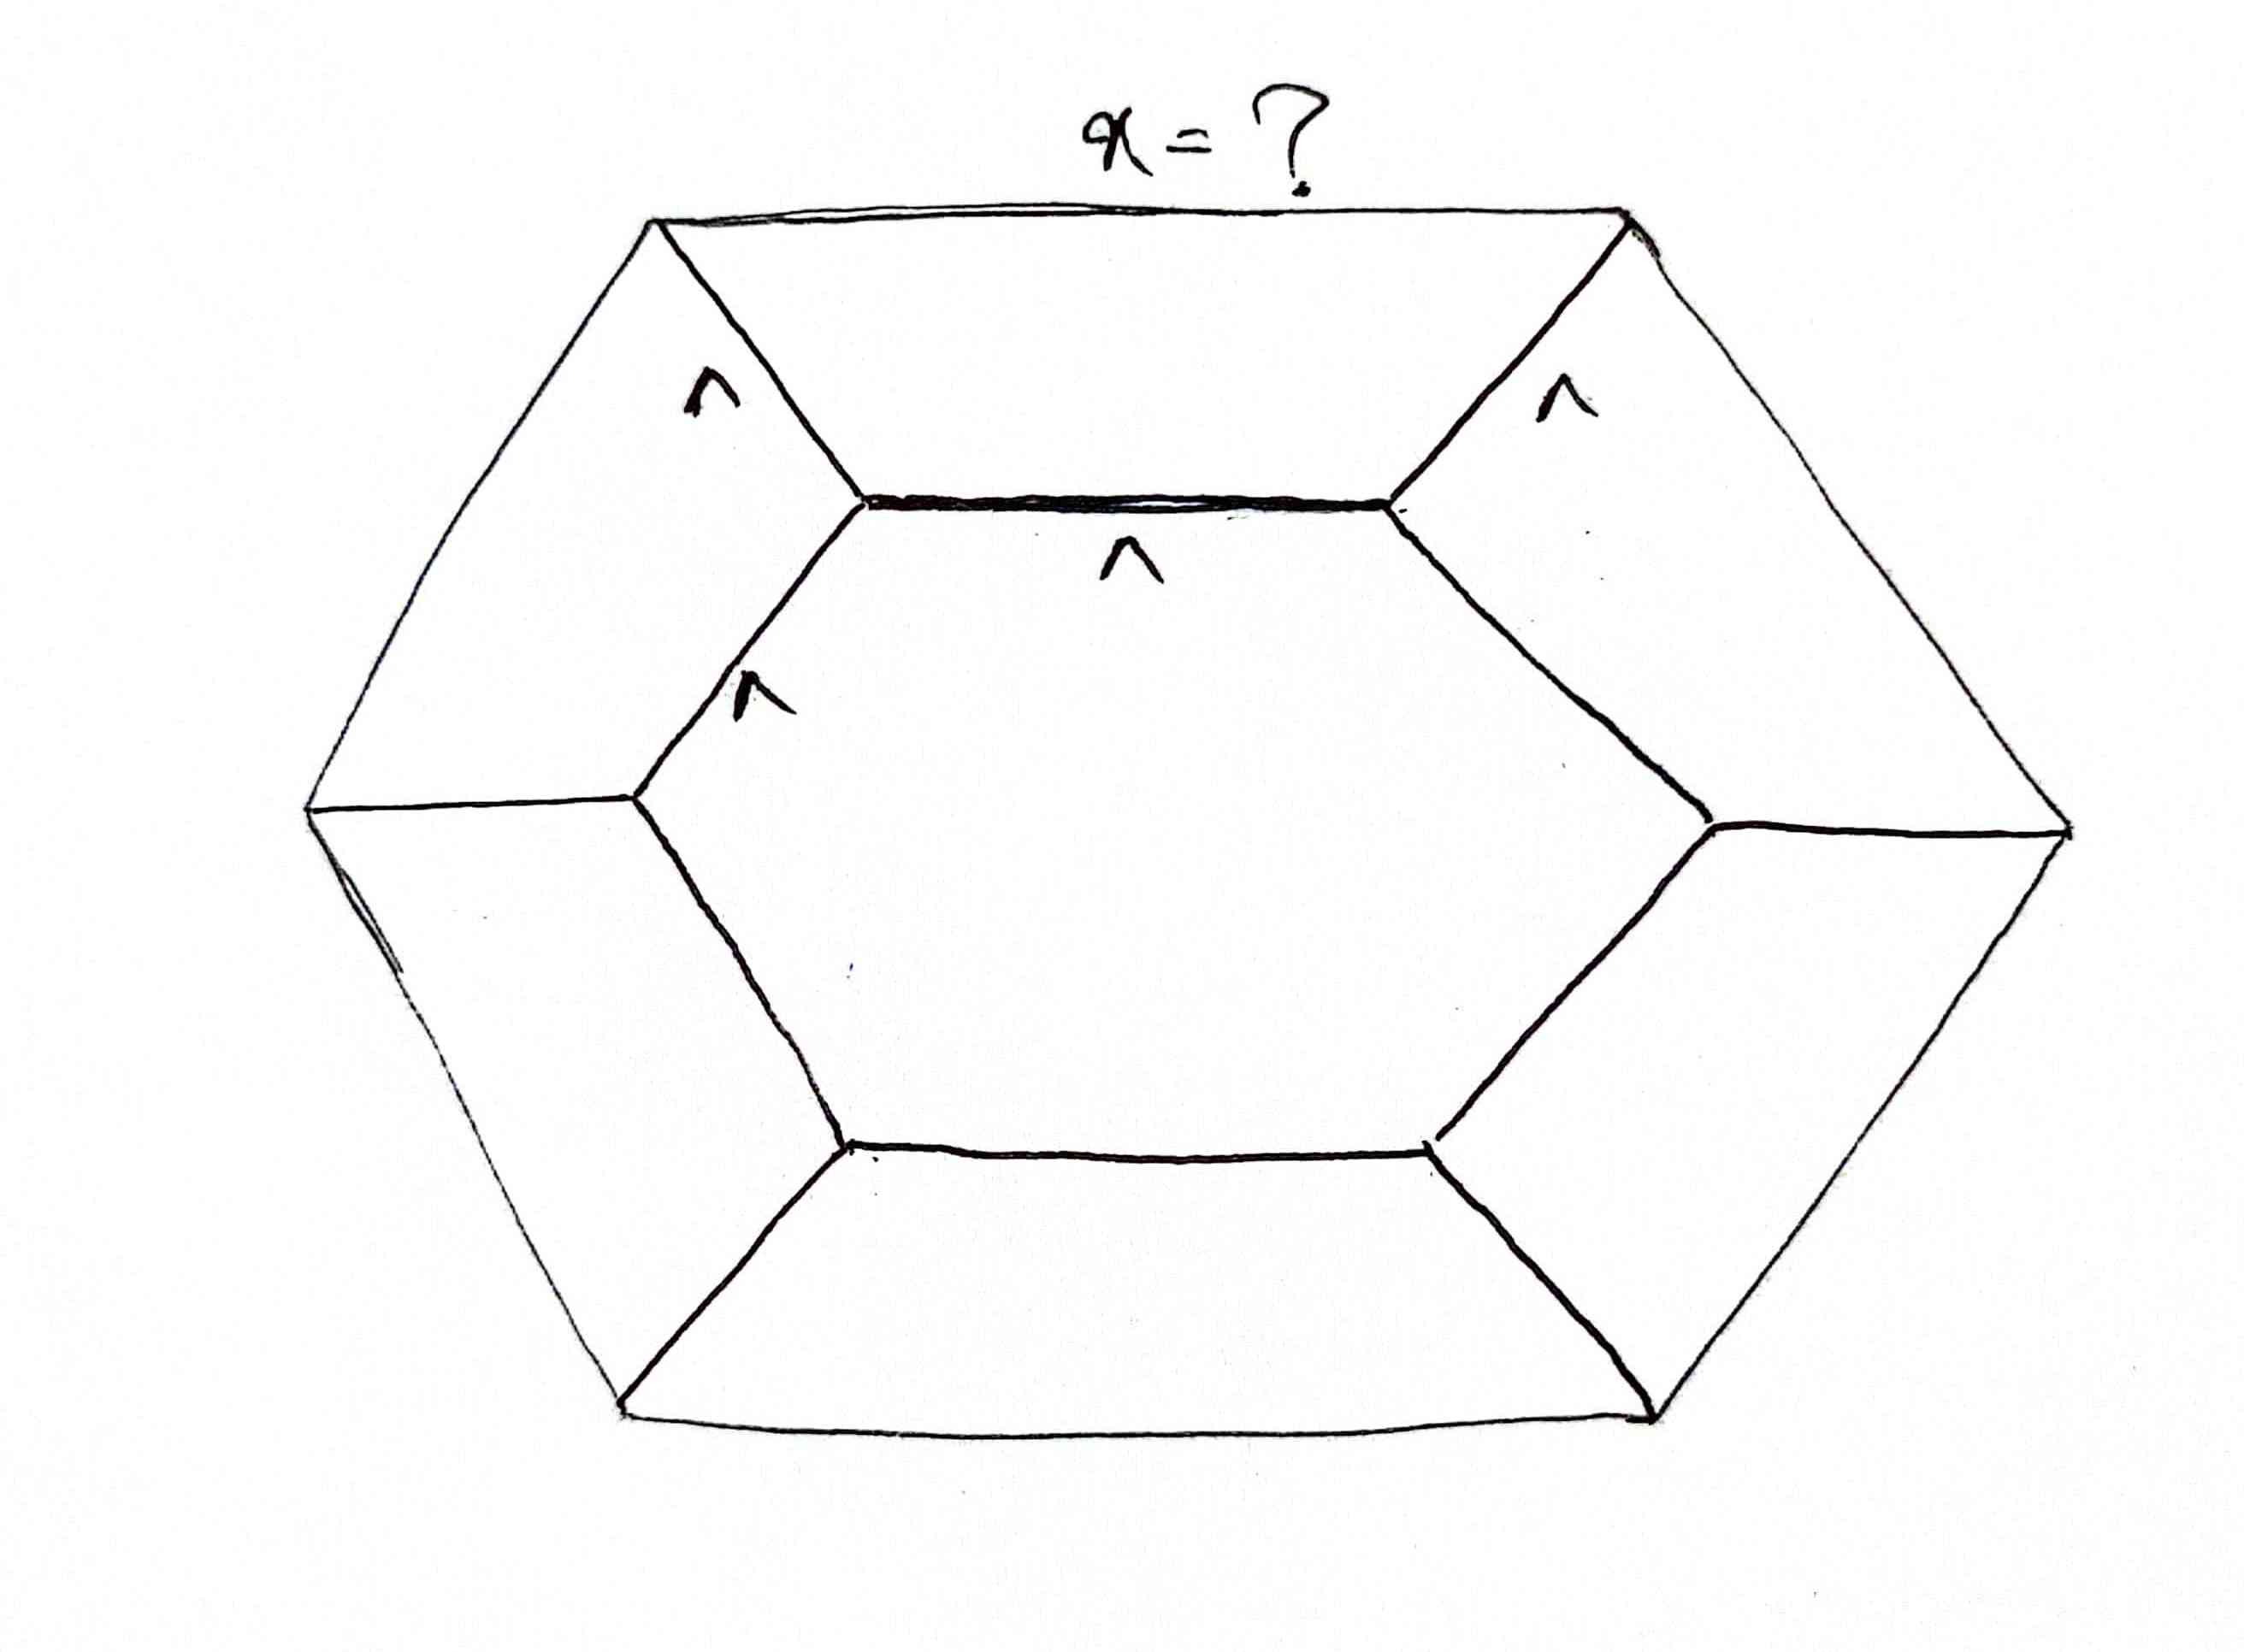  ی 6 ضلعی داخل یه 6 ضلعی دیگه س با طول اضلاع 8، طول ضلع 6 ضلعی بیرونی چنده؟ 